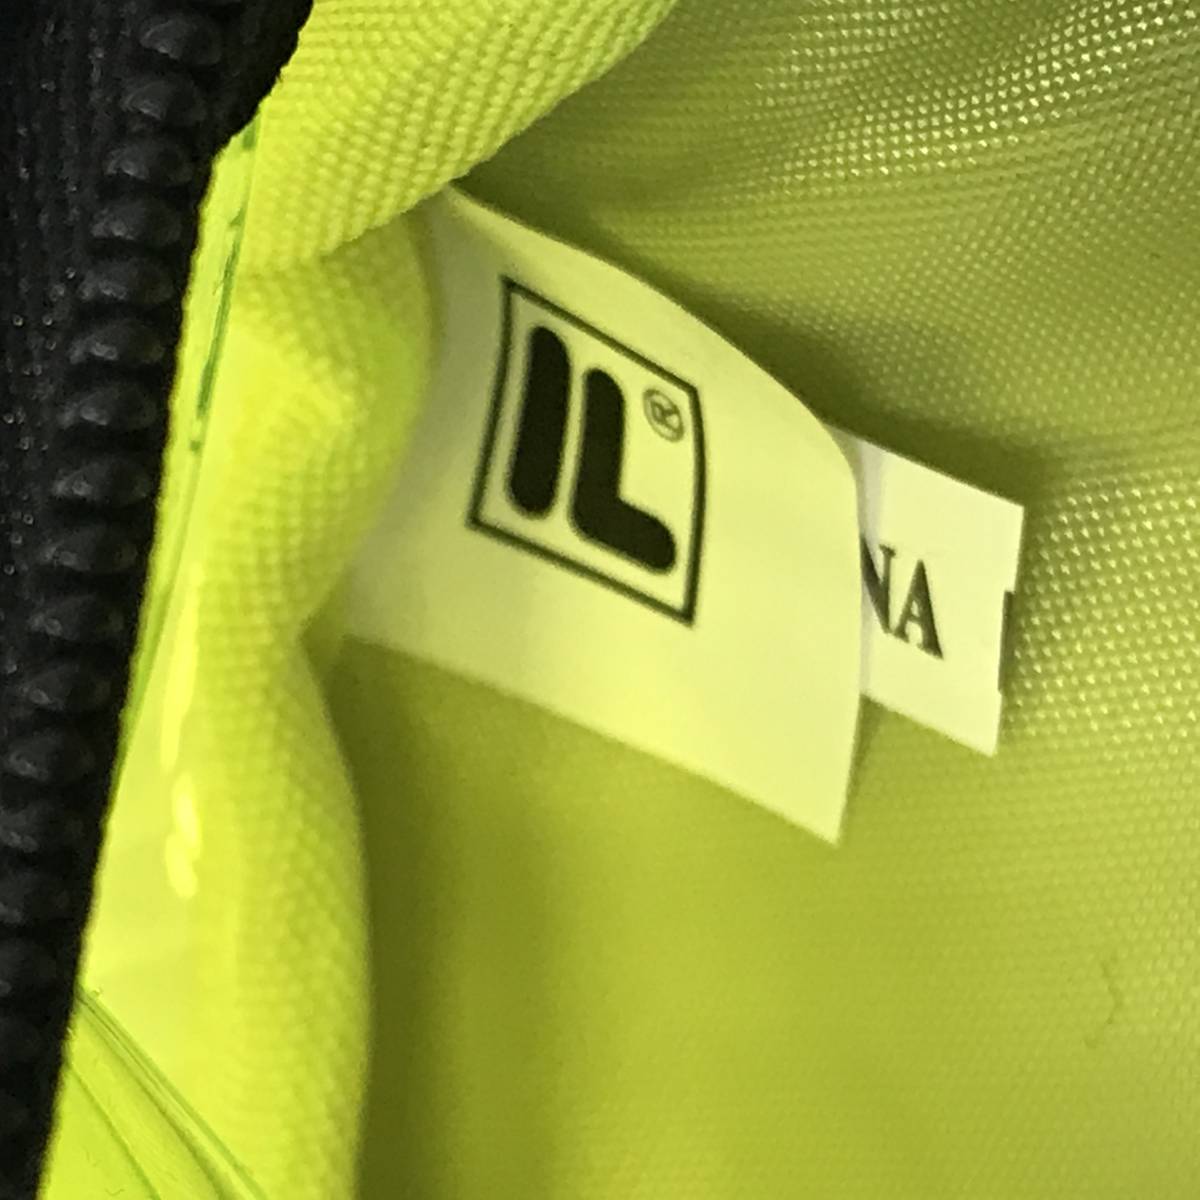  не использовался товар FILA желтый сумка "body" rete e-s мужской прозрачный сумка сумка-пояс прозрачный наклонный .. пляж бассейн бренд каркас 